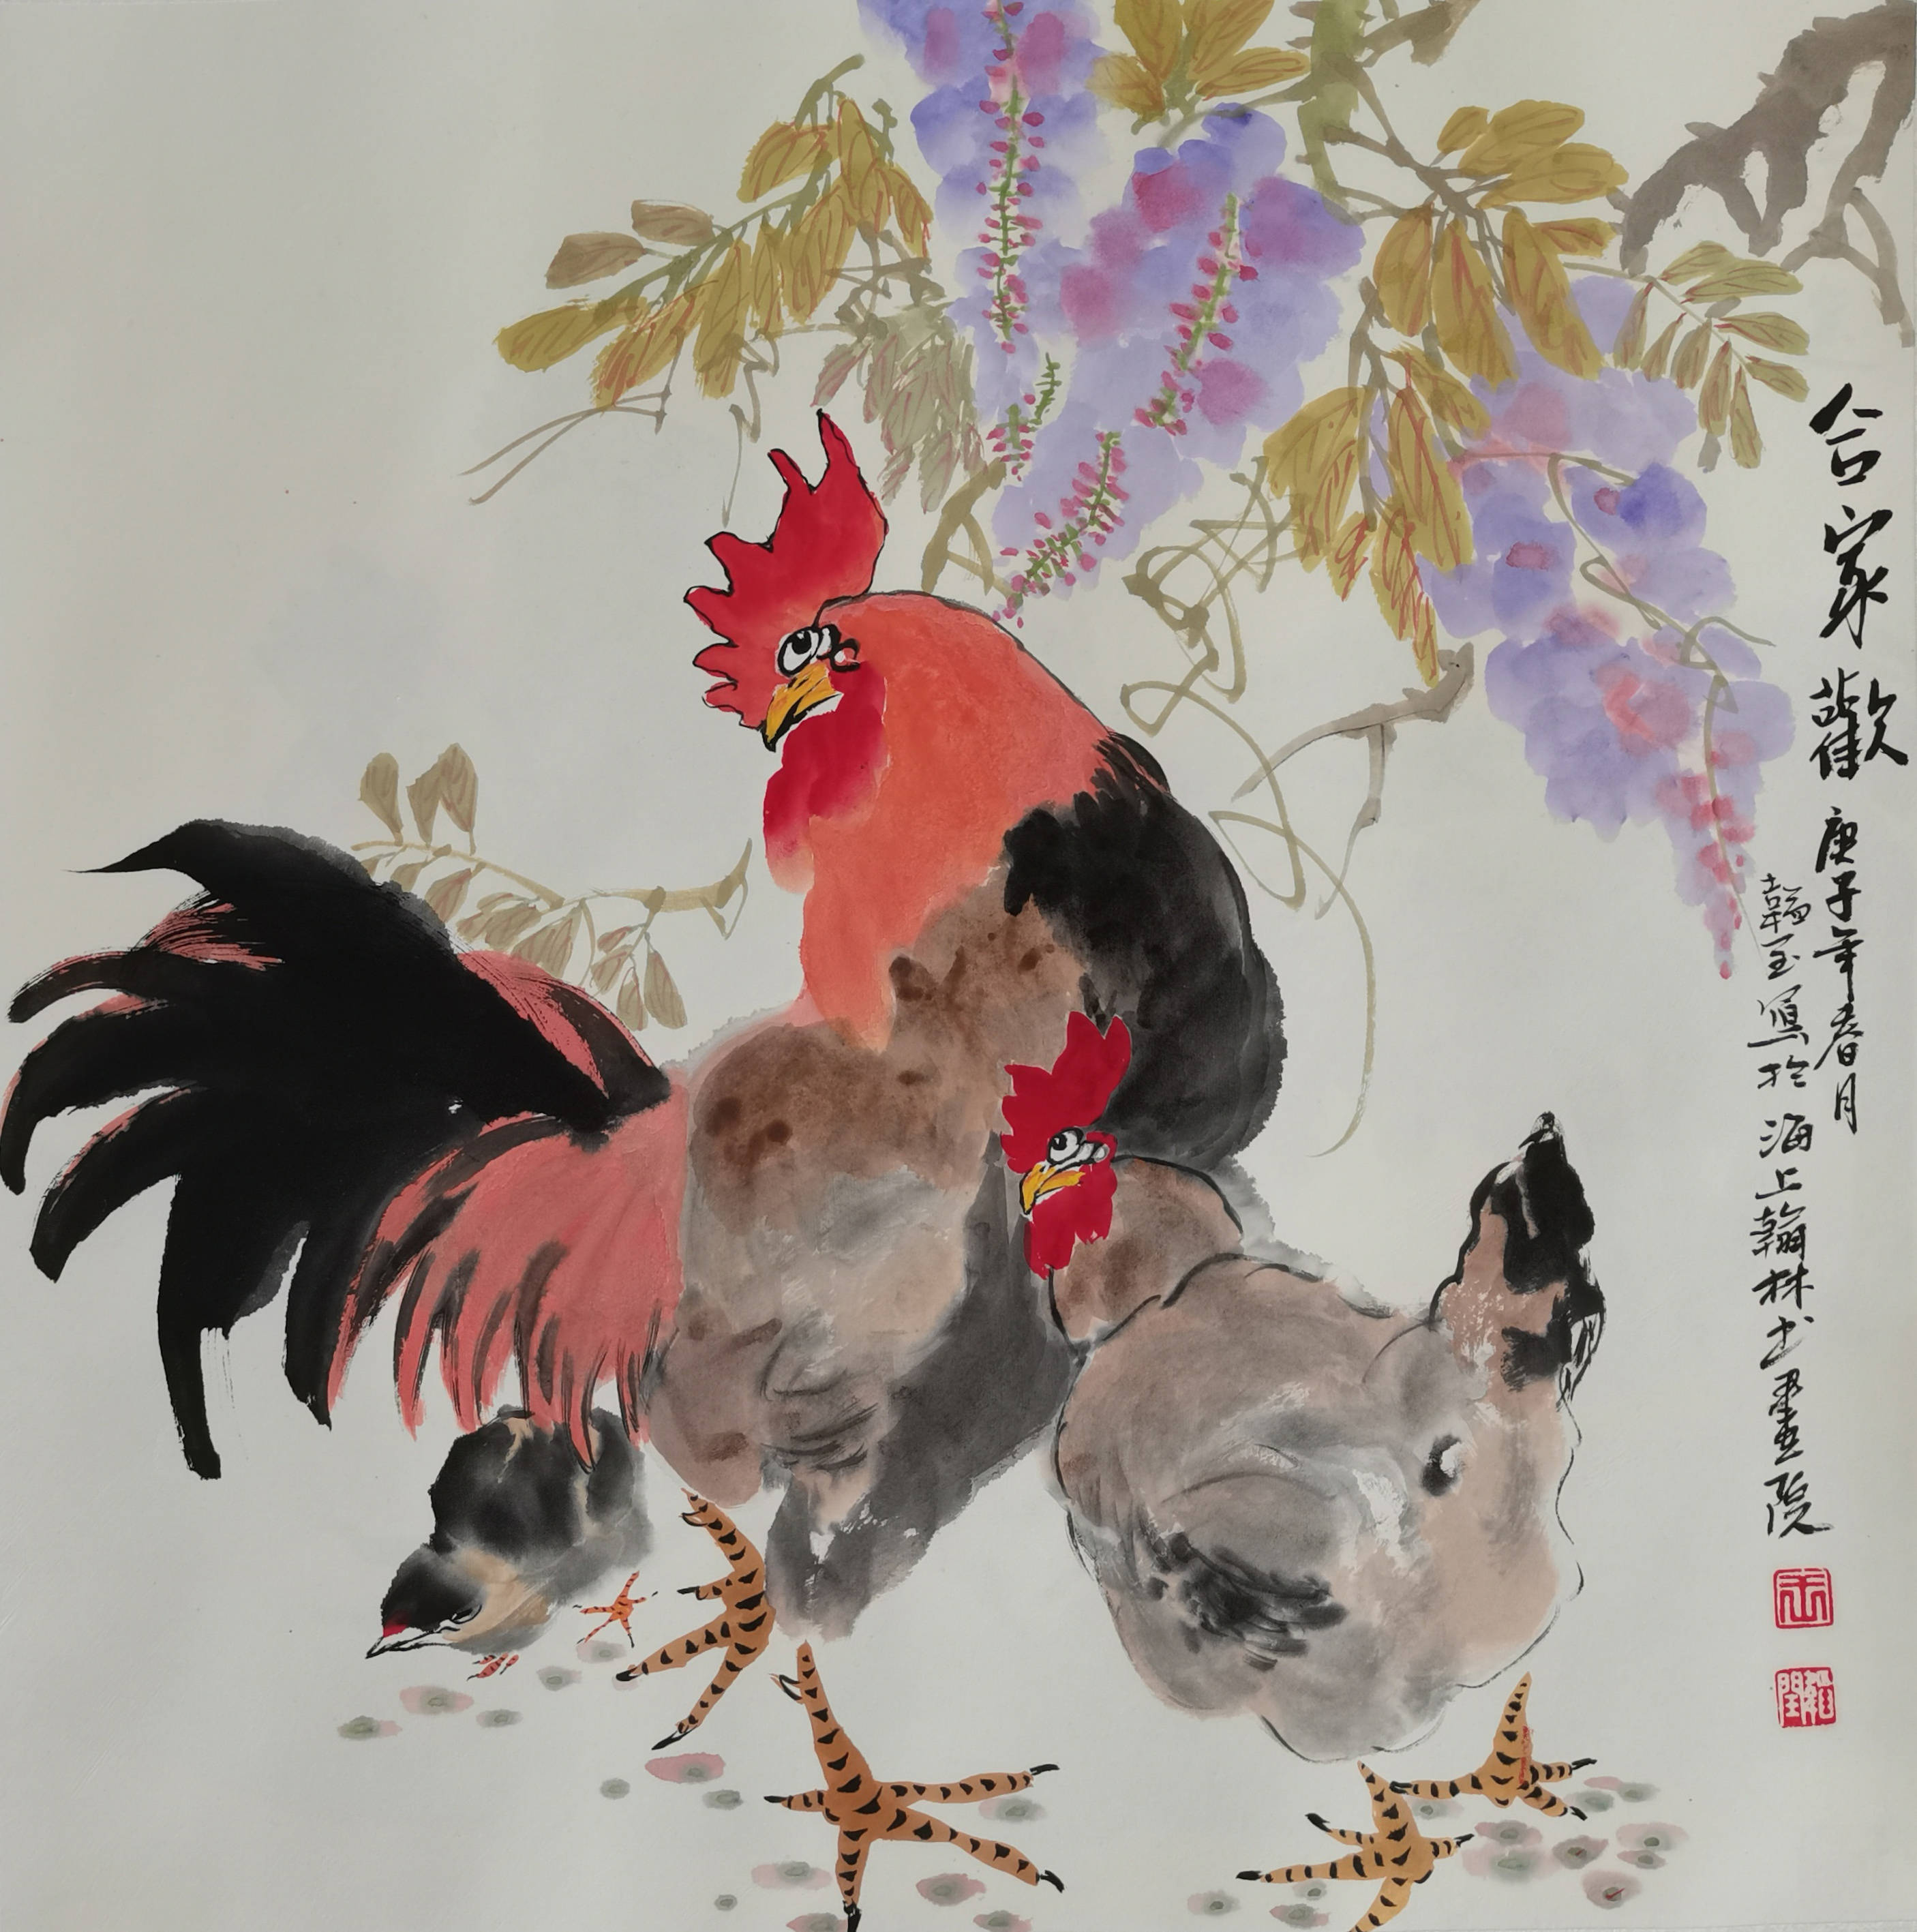 王先生画鸡,是照鸡画鸡的过程,以写生为视角,对鸡的姿态神态习性了然